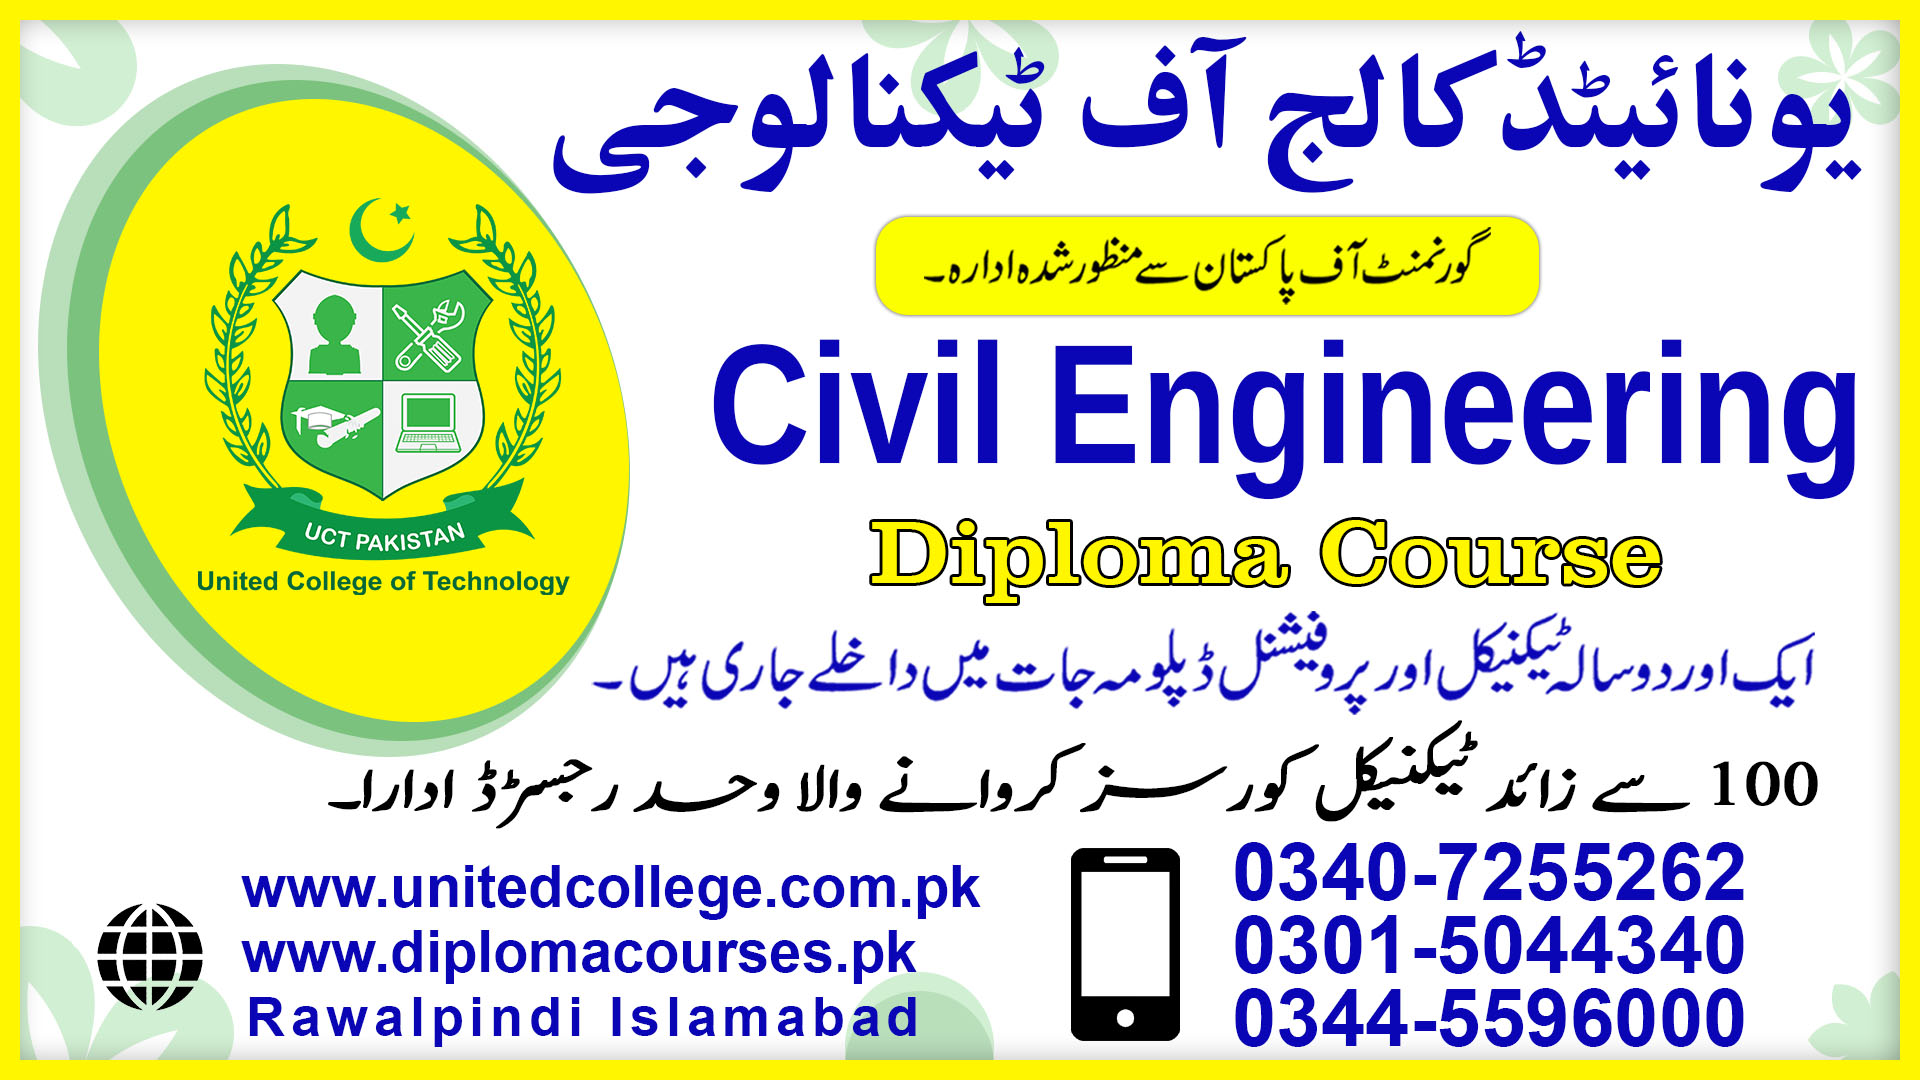 CIVIL ENGINEERING COURSE IN RAWALPINDI ISLAMABAD PAKISTAN